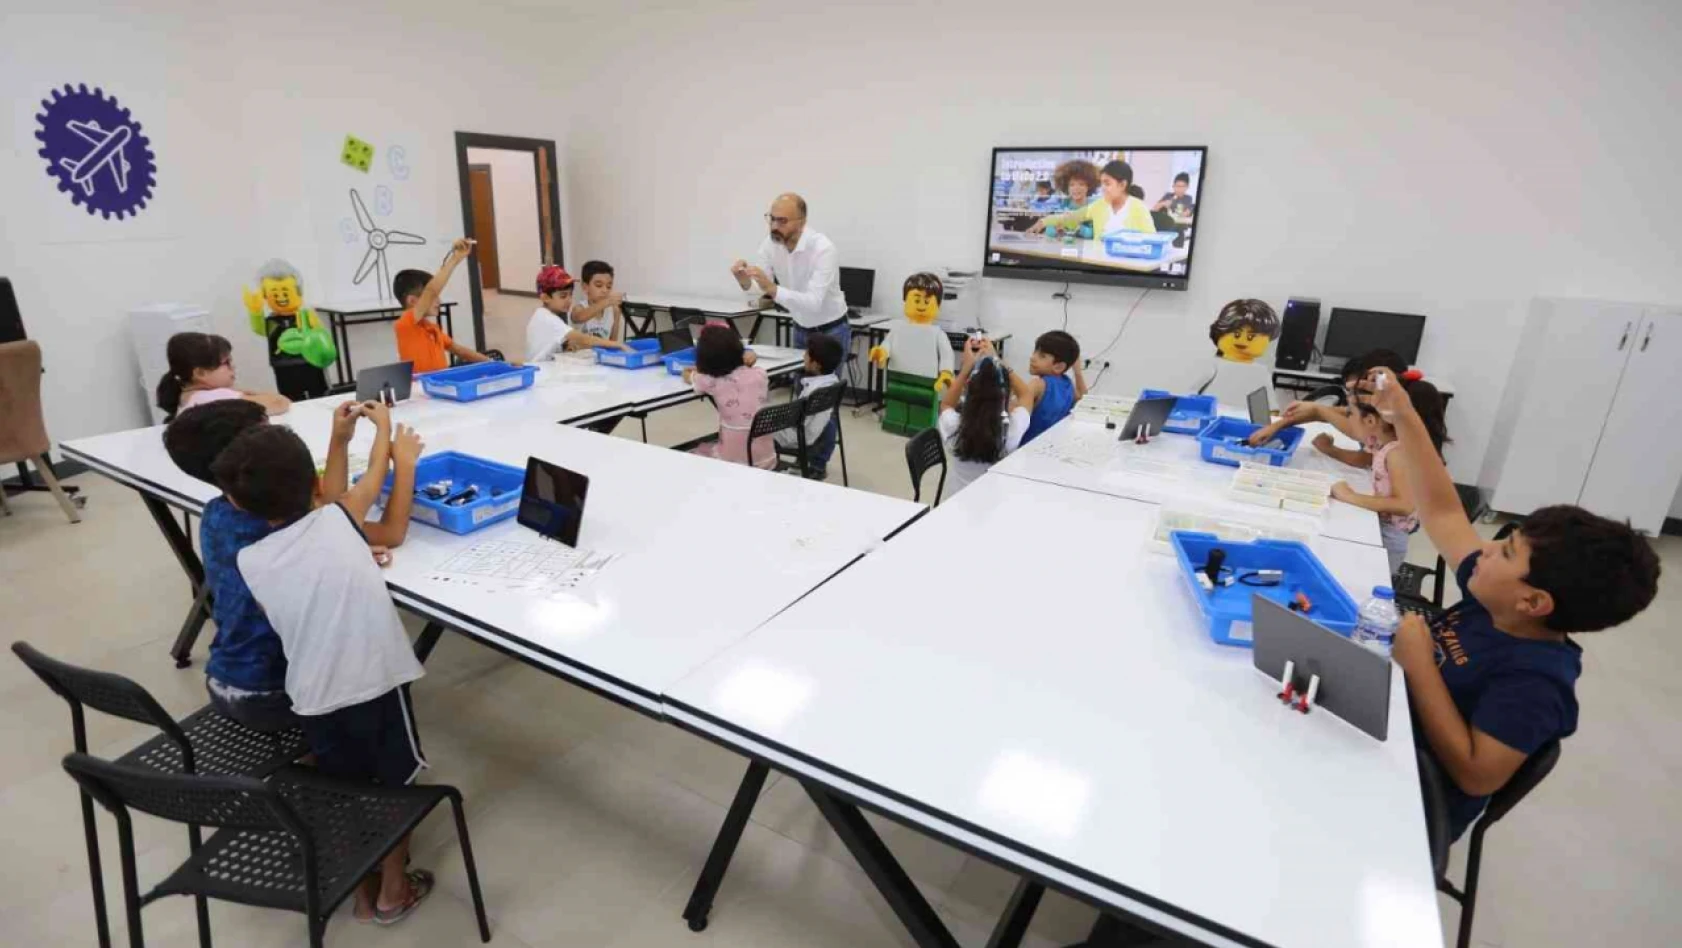 Elazığ'da robotik kodlama eğitimine çocuklardan yoğun ilgi